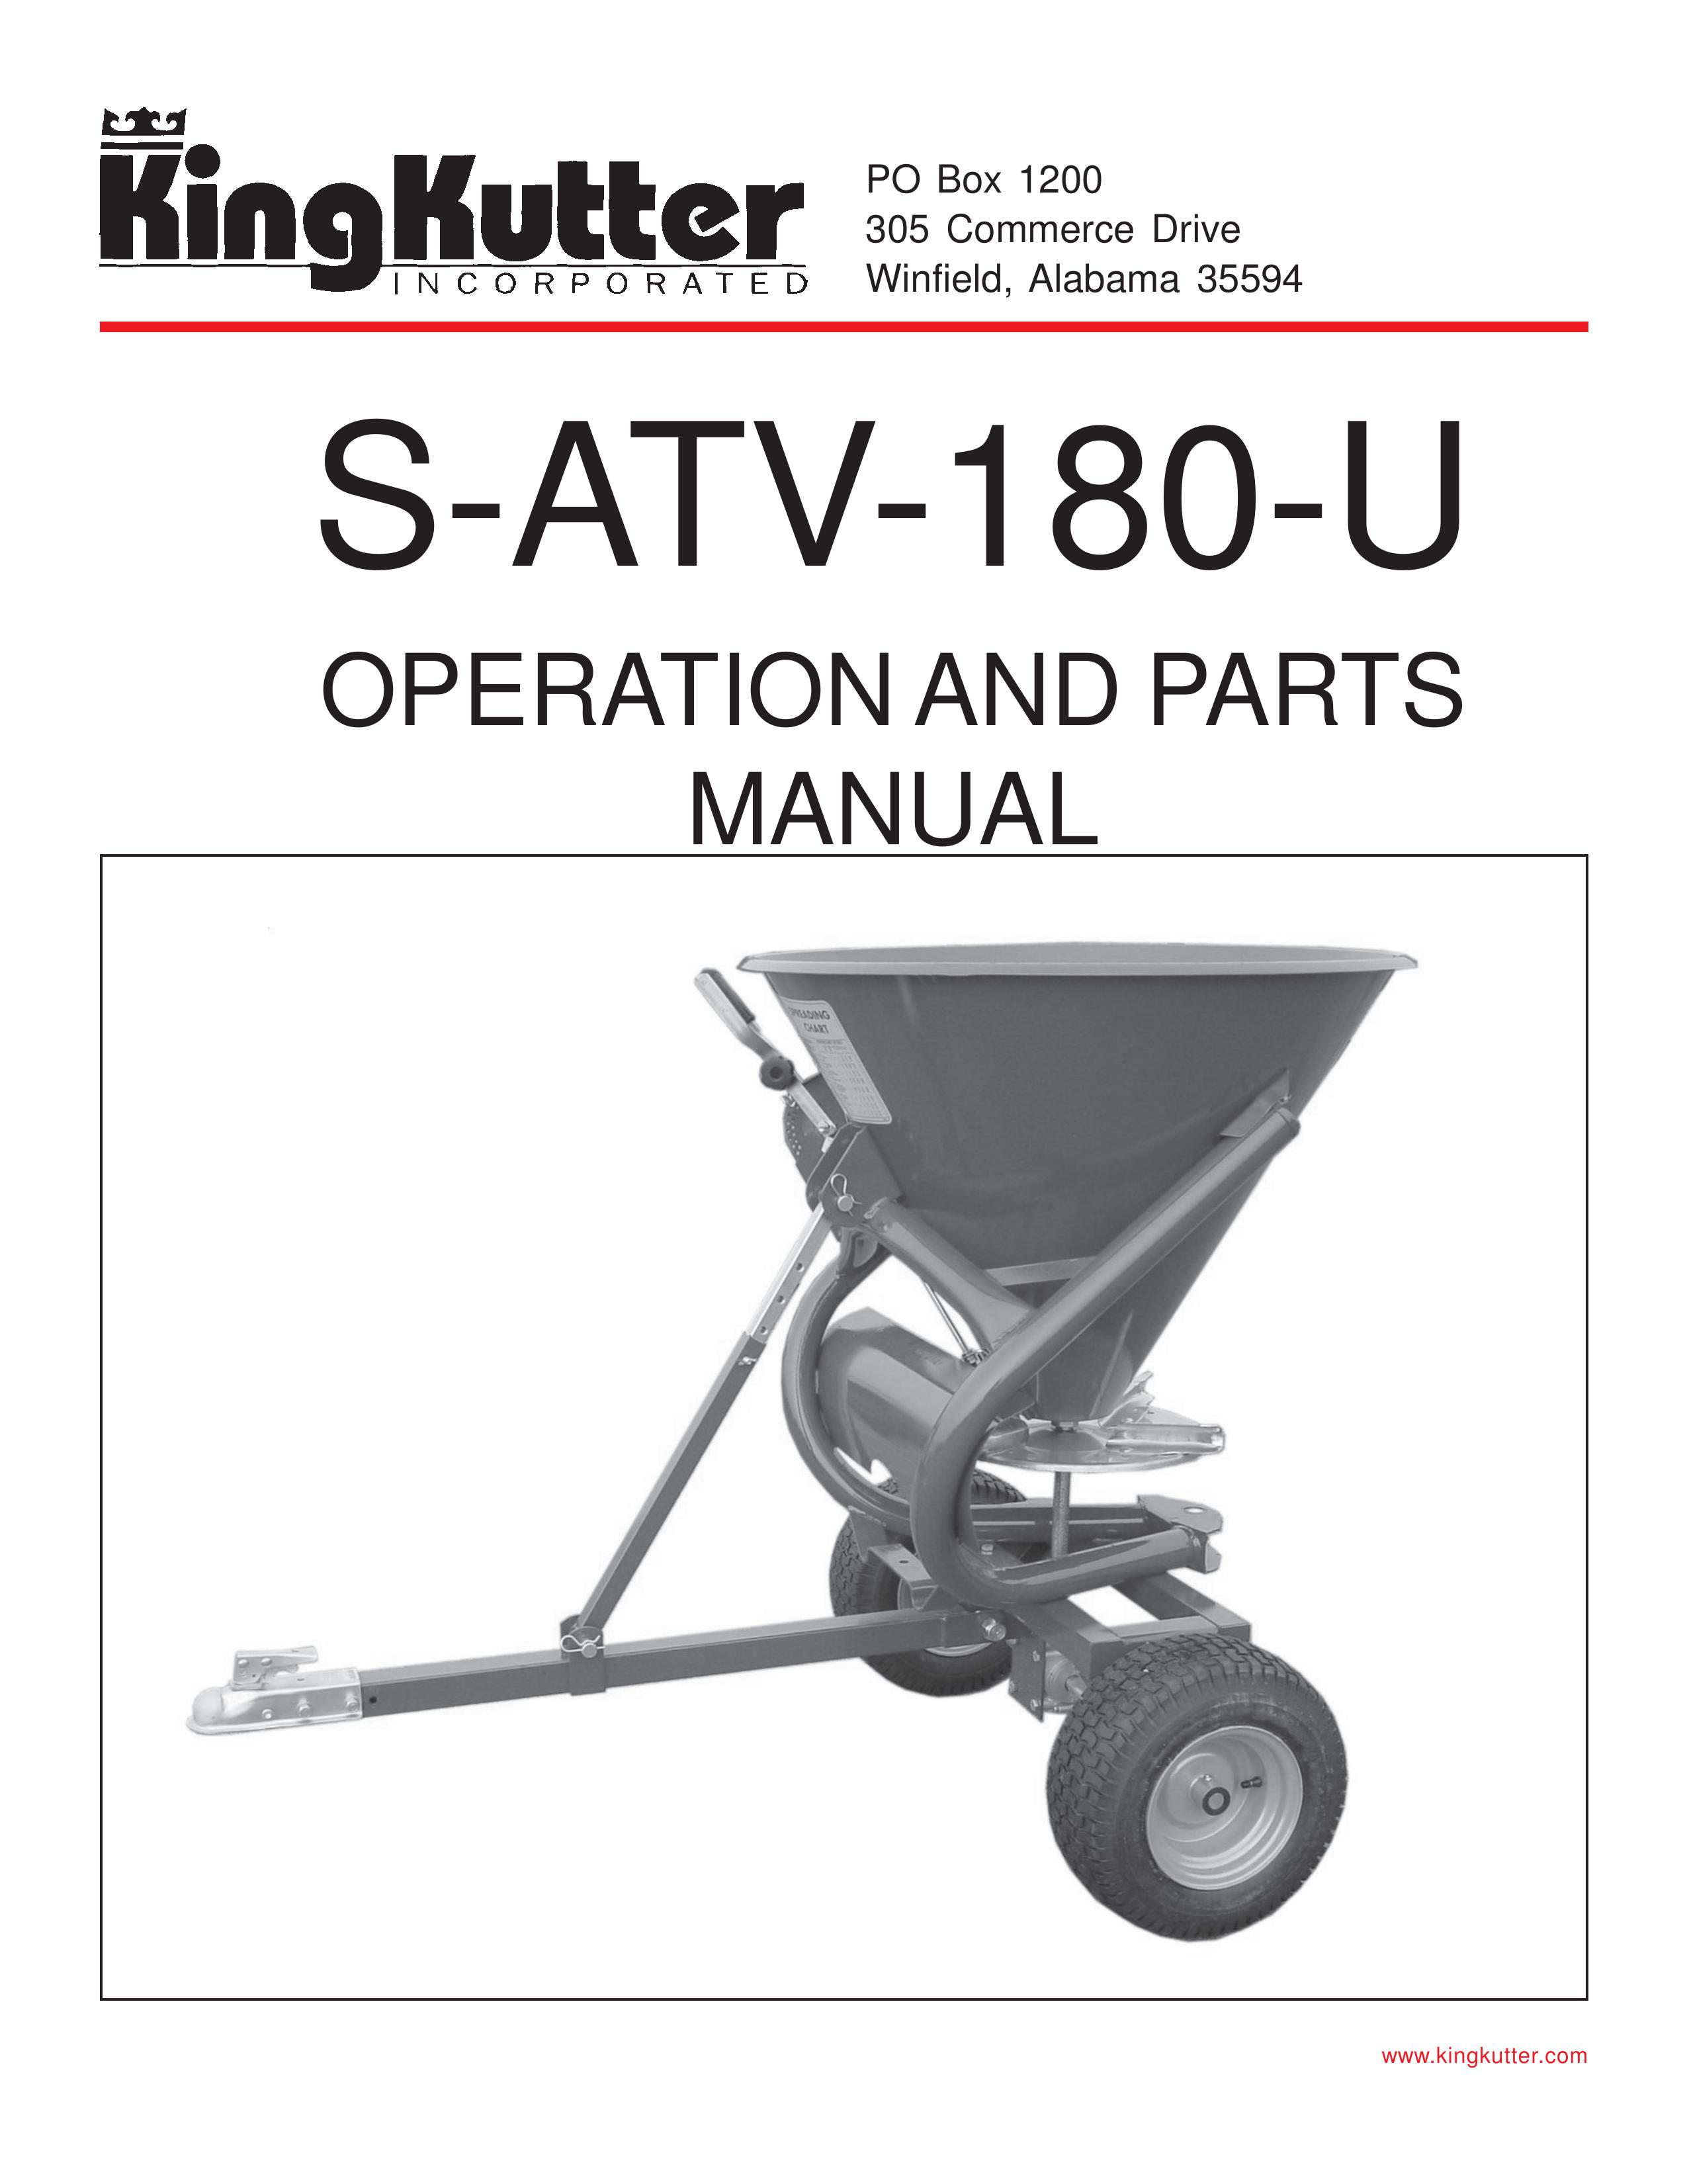 King Kutter S-ATV-180-U Spreader User Manual